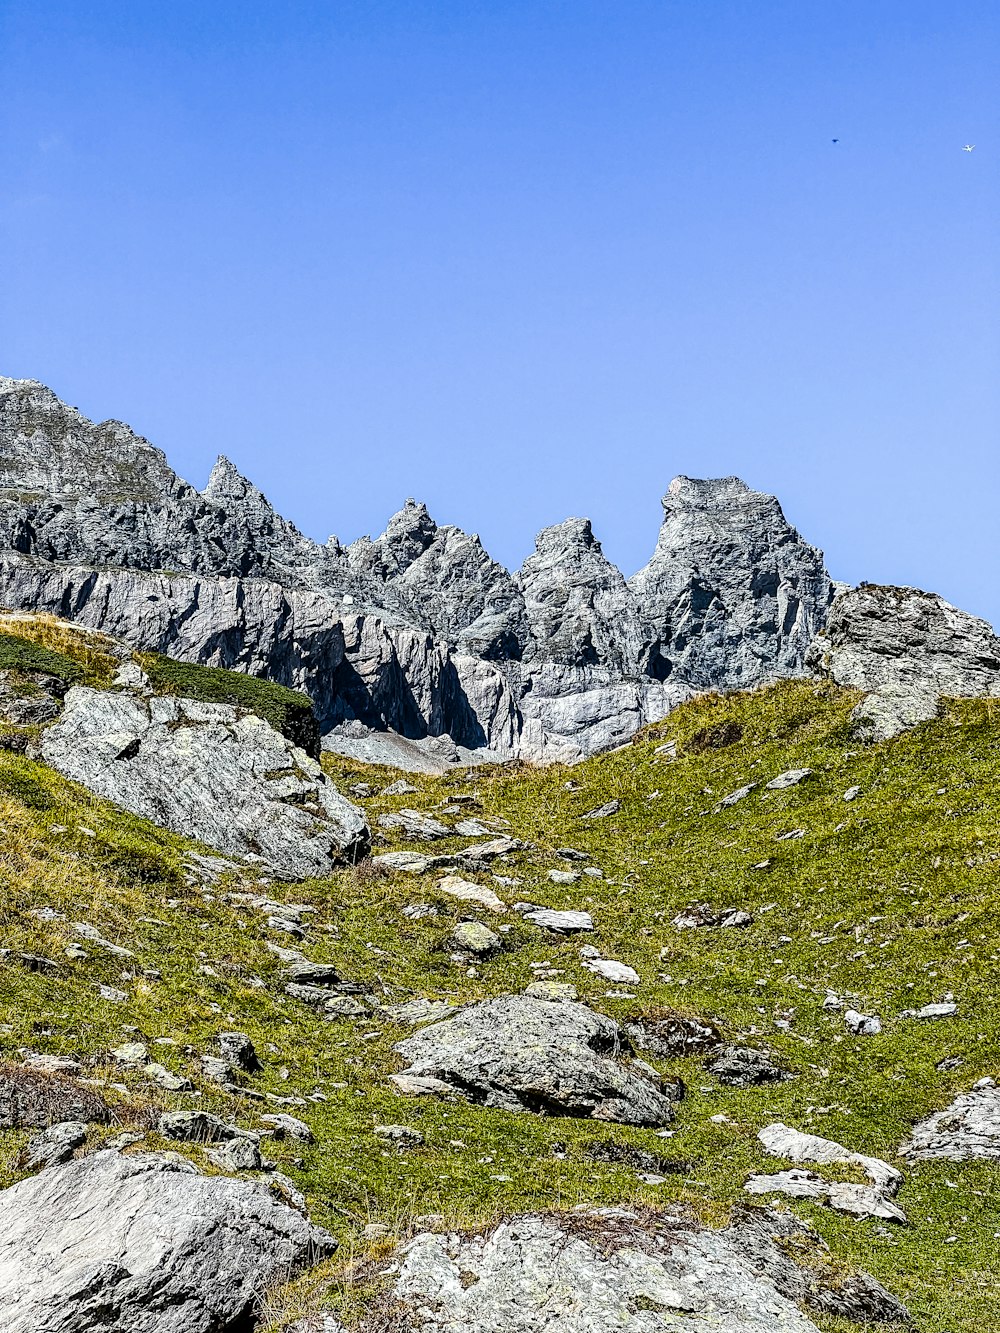 전경에 바위와 풀이 있는 풀이 무성한 언덕